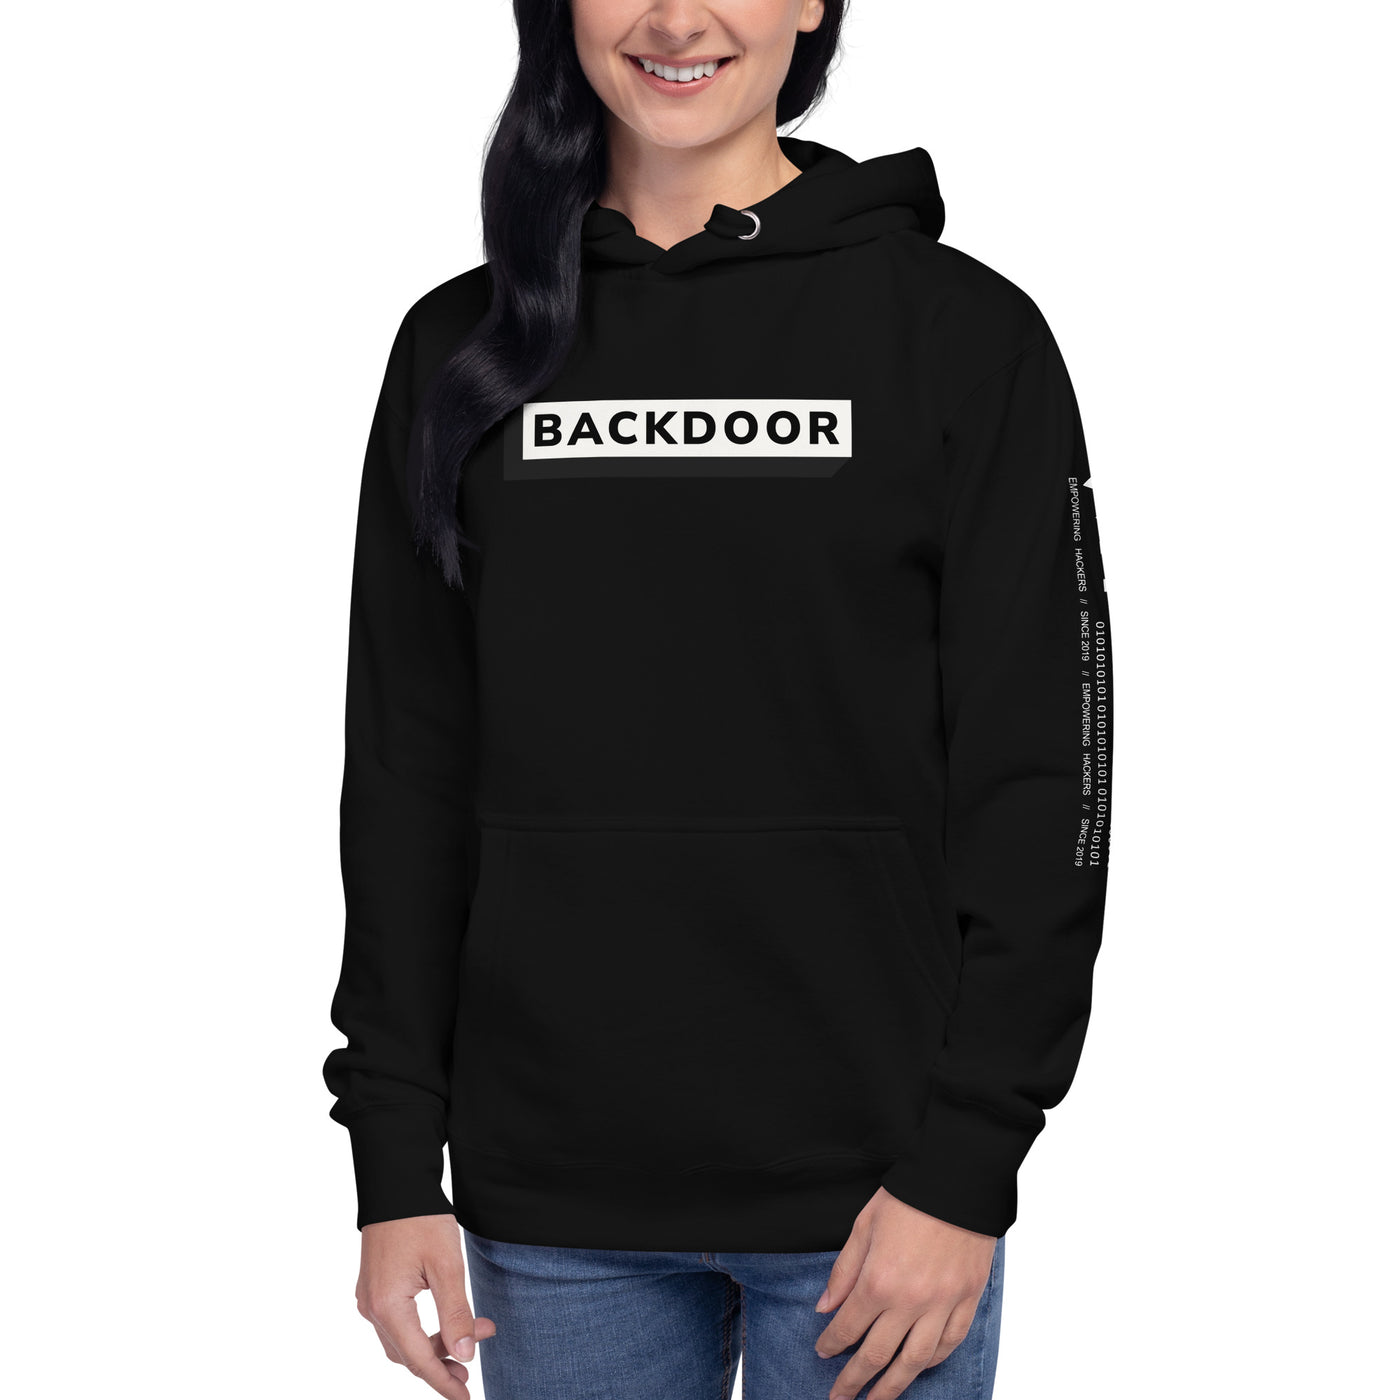 Backdoor - Unisex Hoodie